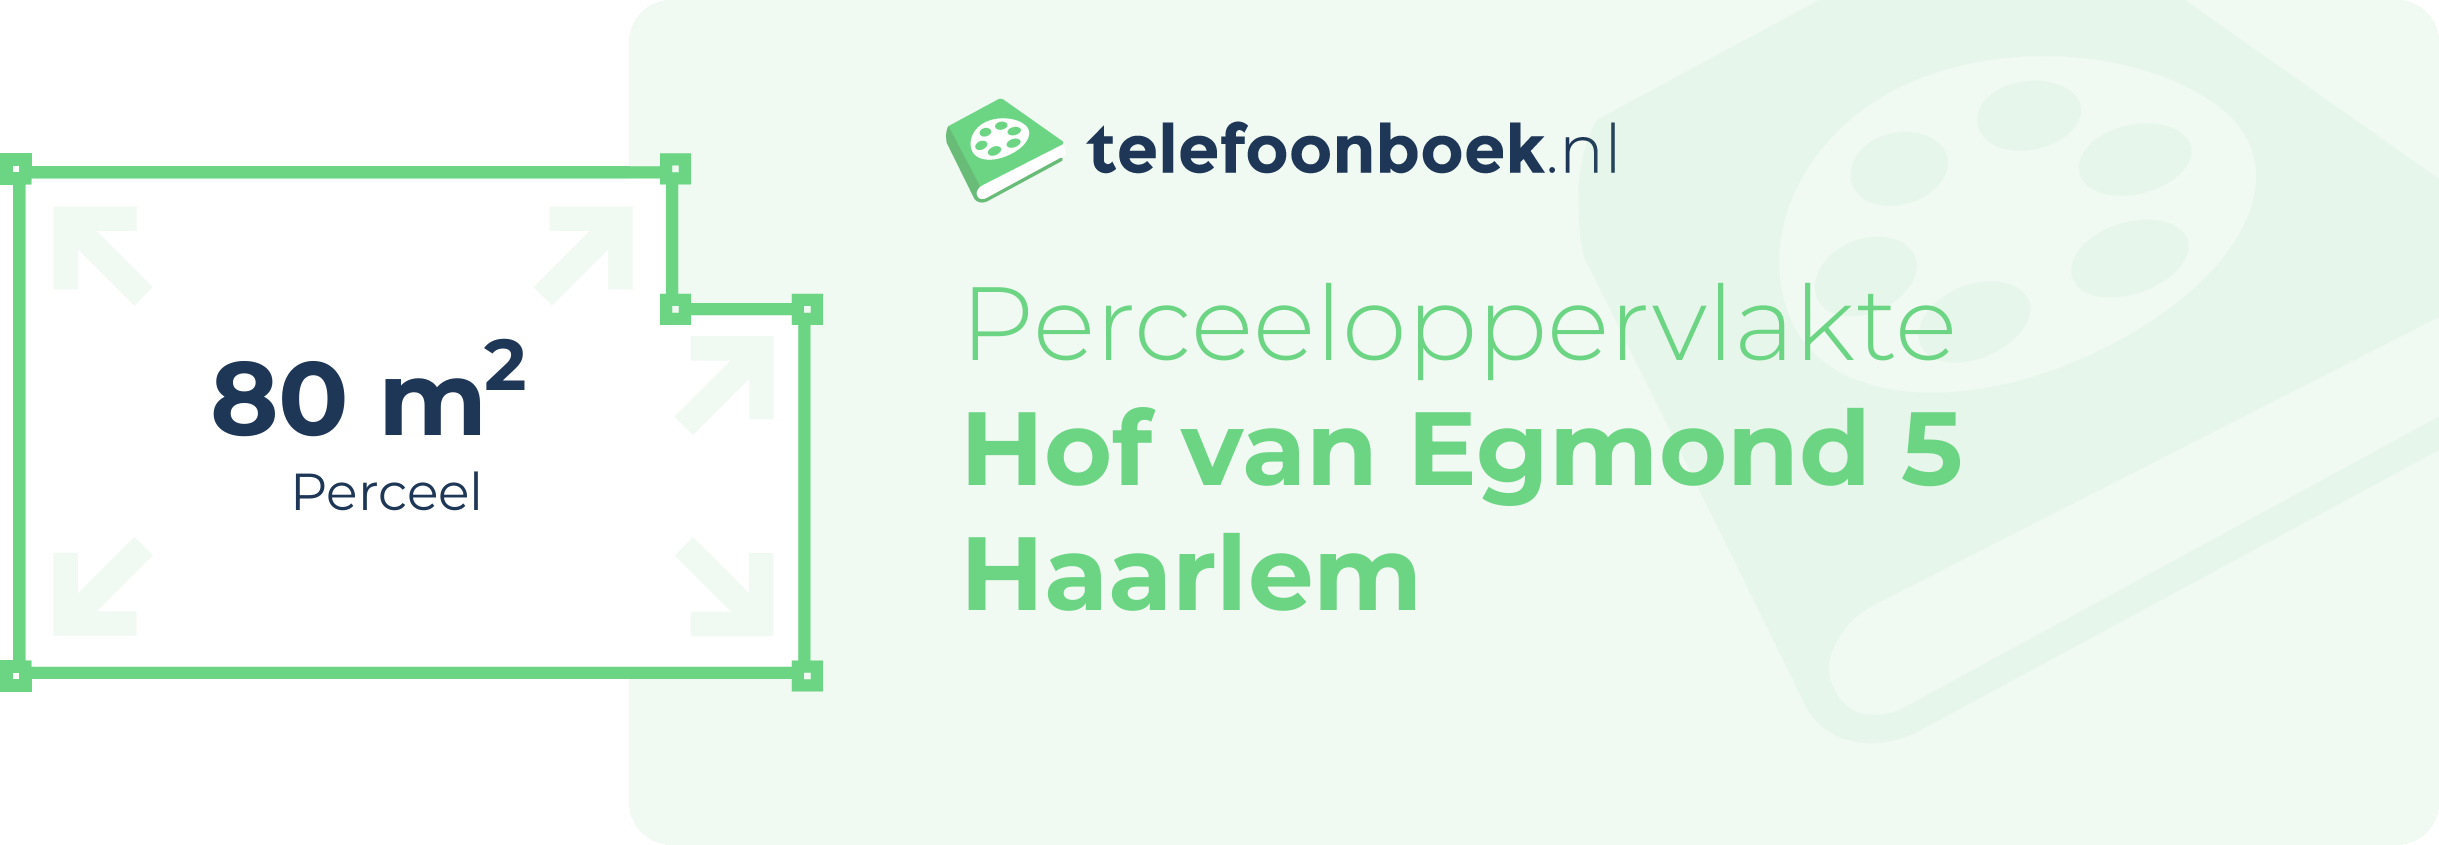 Perceeloppervlakte Hof Van Egmond 5 Haarlem